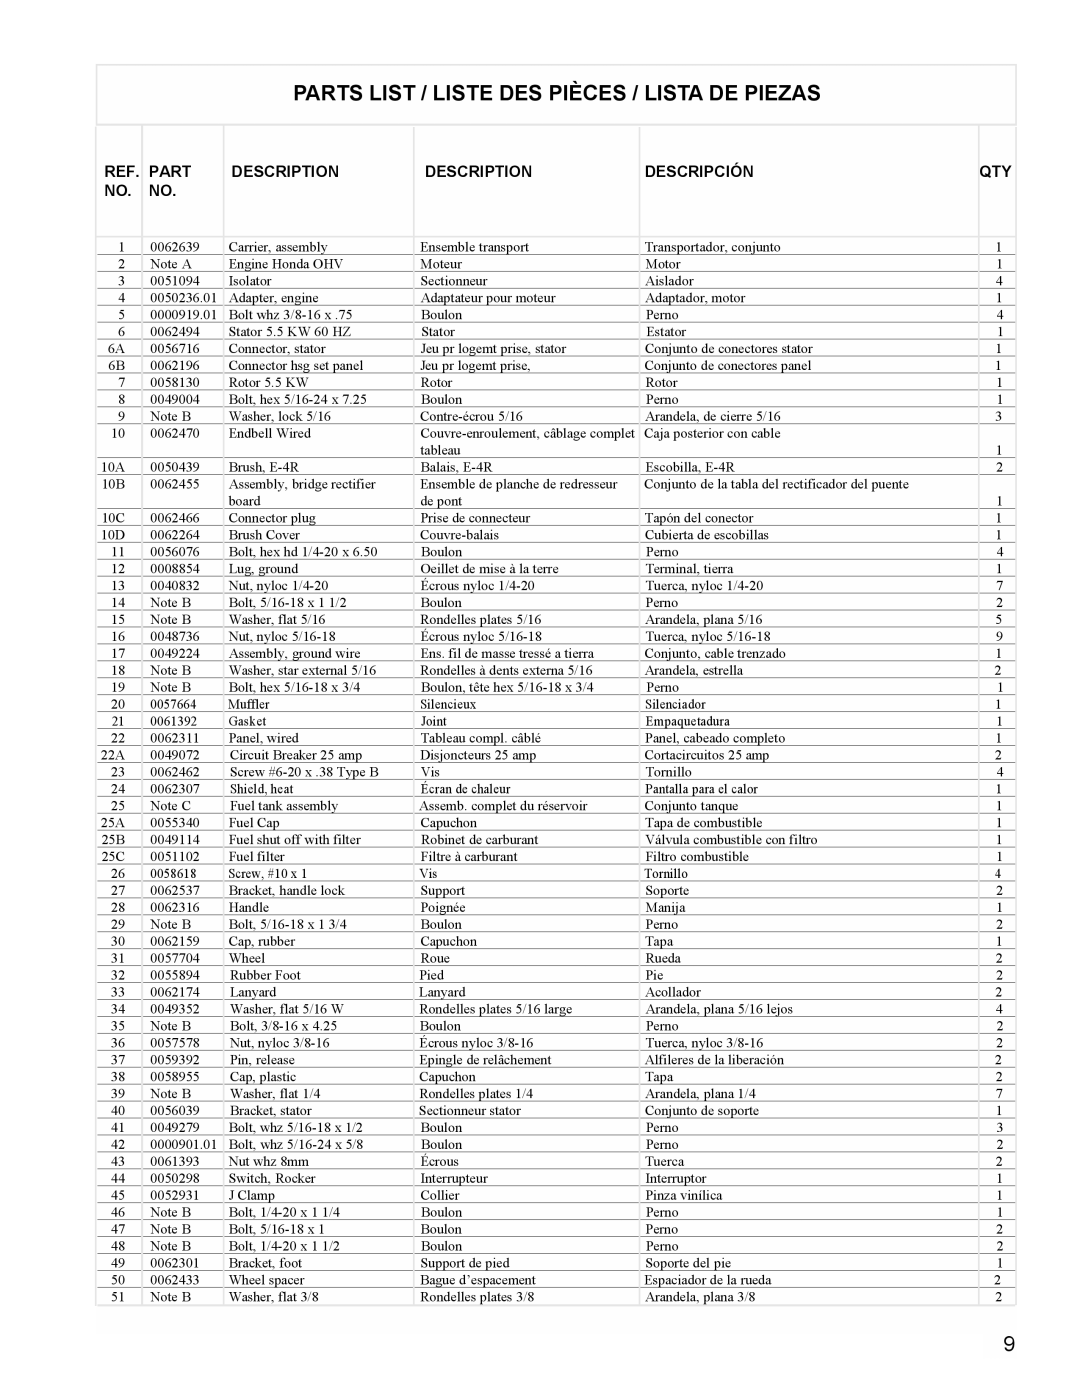 Powermate PL0495503 manual Parts List / Liste Des Pièces / Lista De Piezas, Description, Descripción 